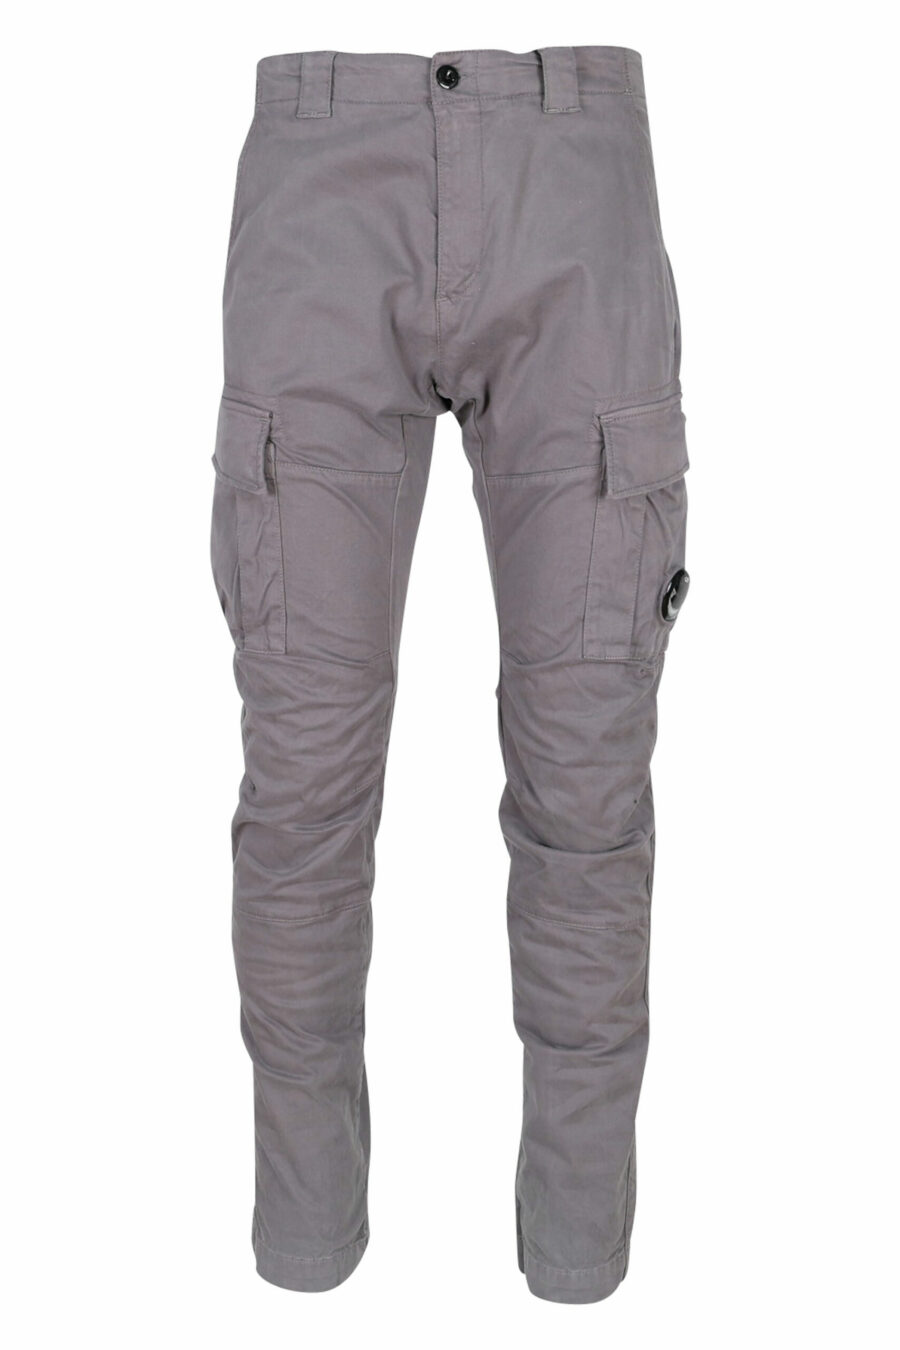 Pantalon cargo gris anthracite en satin extensible et lentille avec logo - 7620943597400 scaled